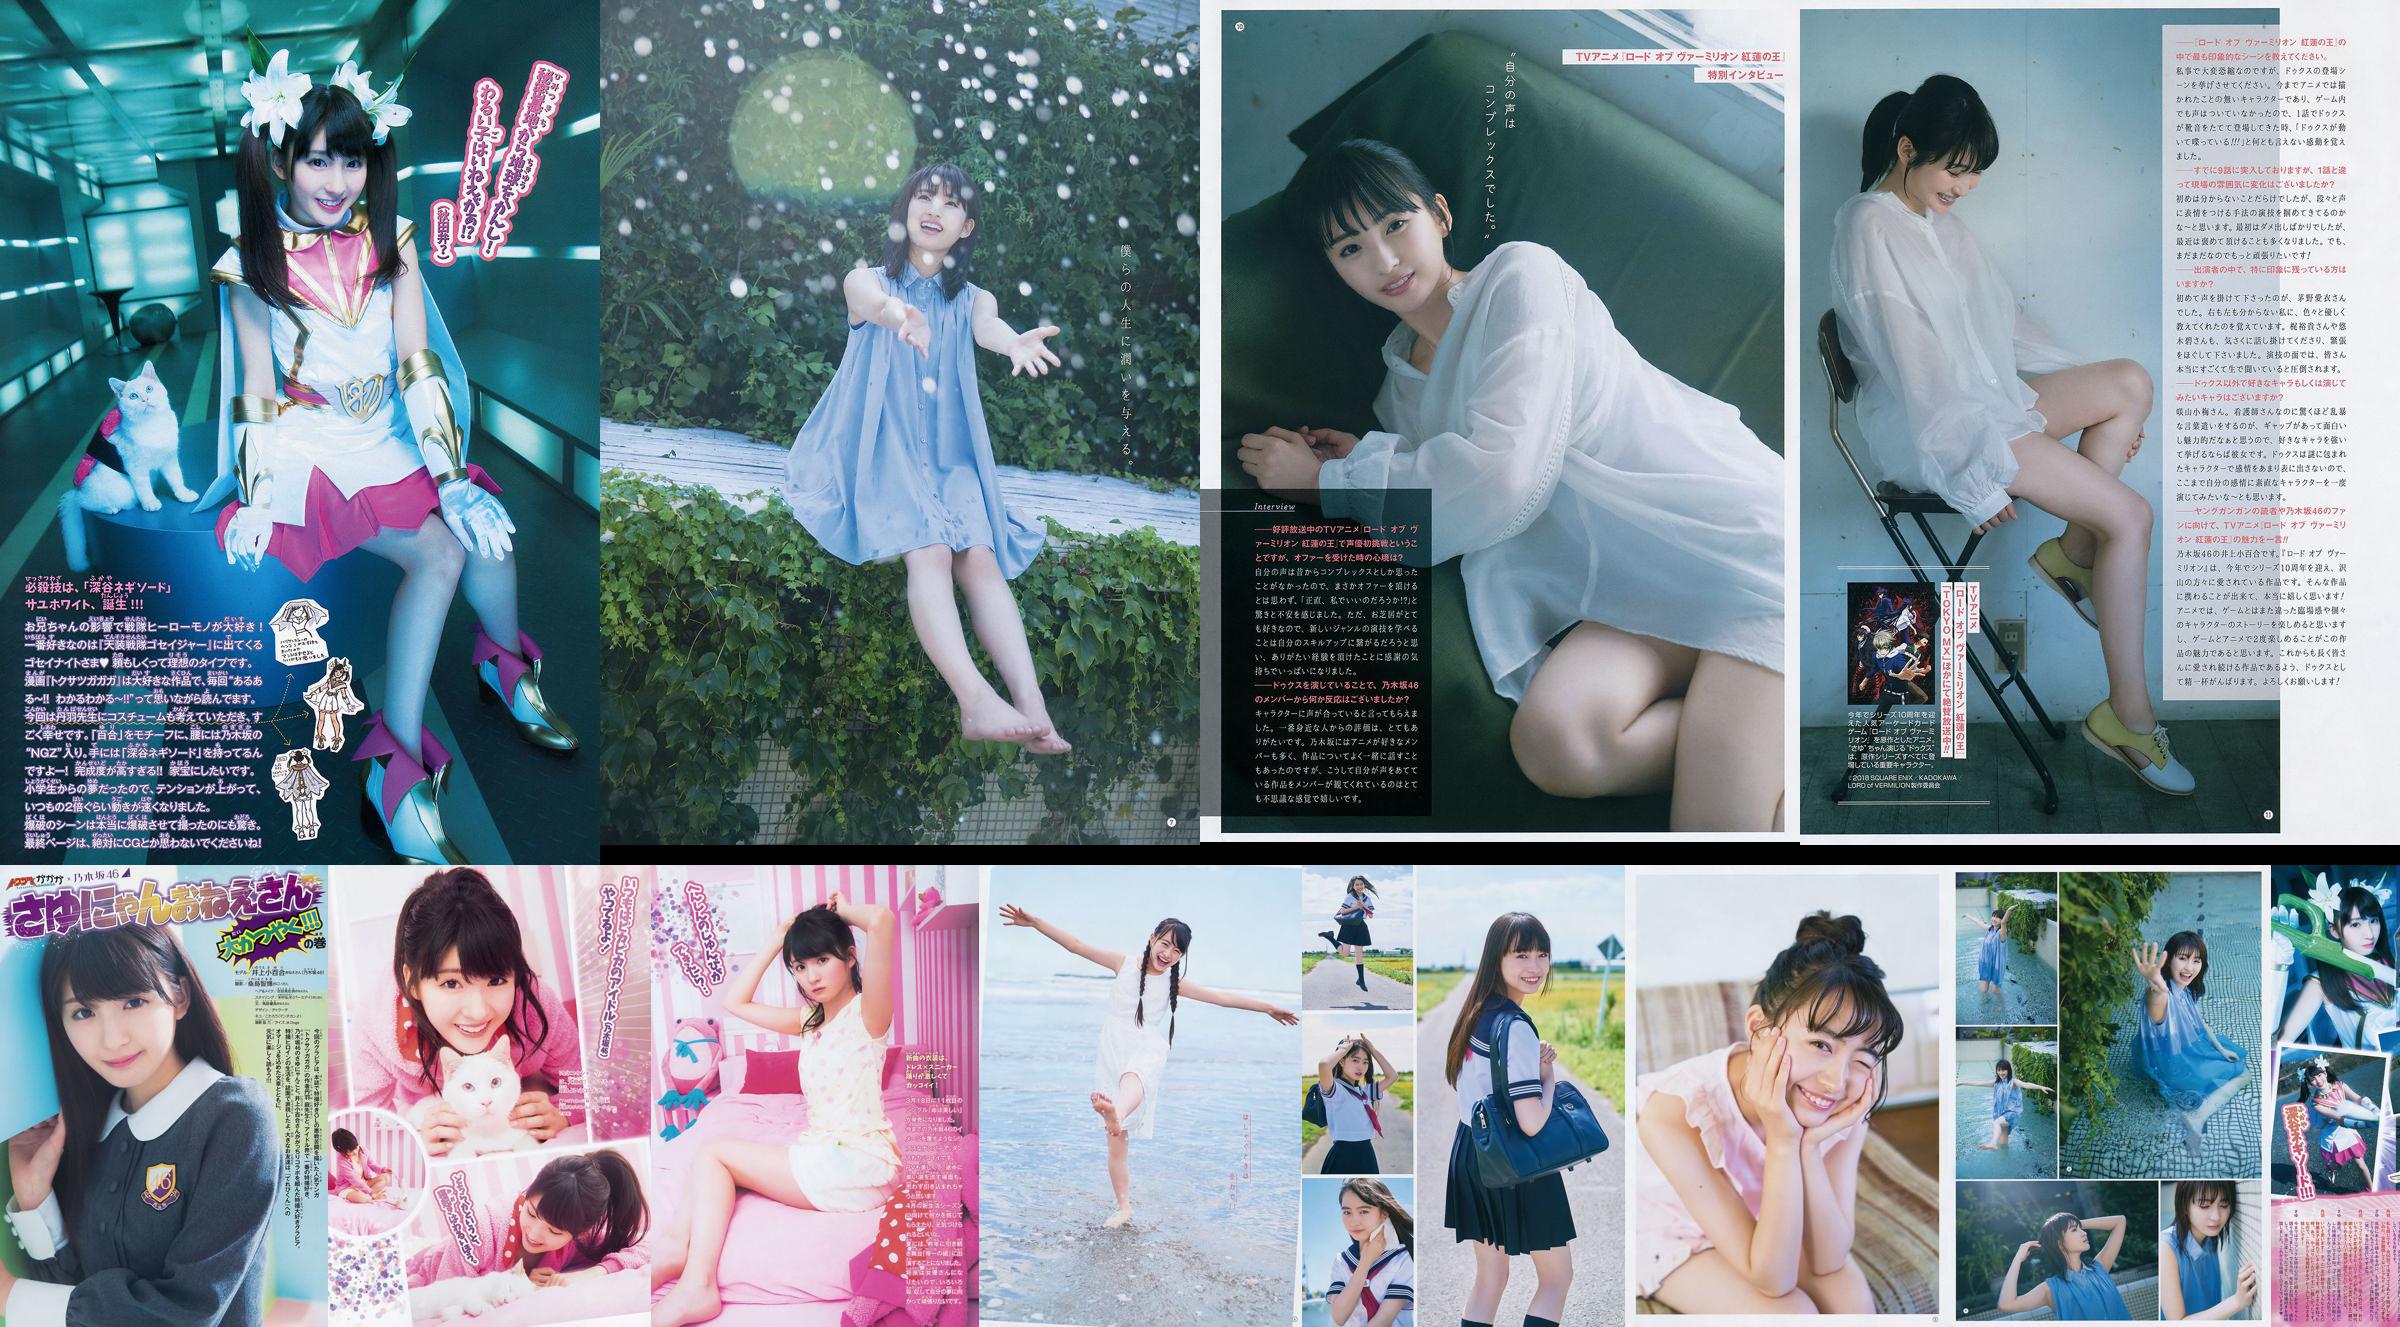 [Young Gangan] Sayuri Inoue Its original sand 2018 No.18 Photo Magazine No.3e9c03 Page 4